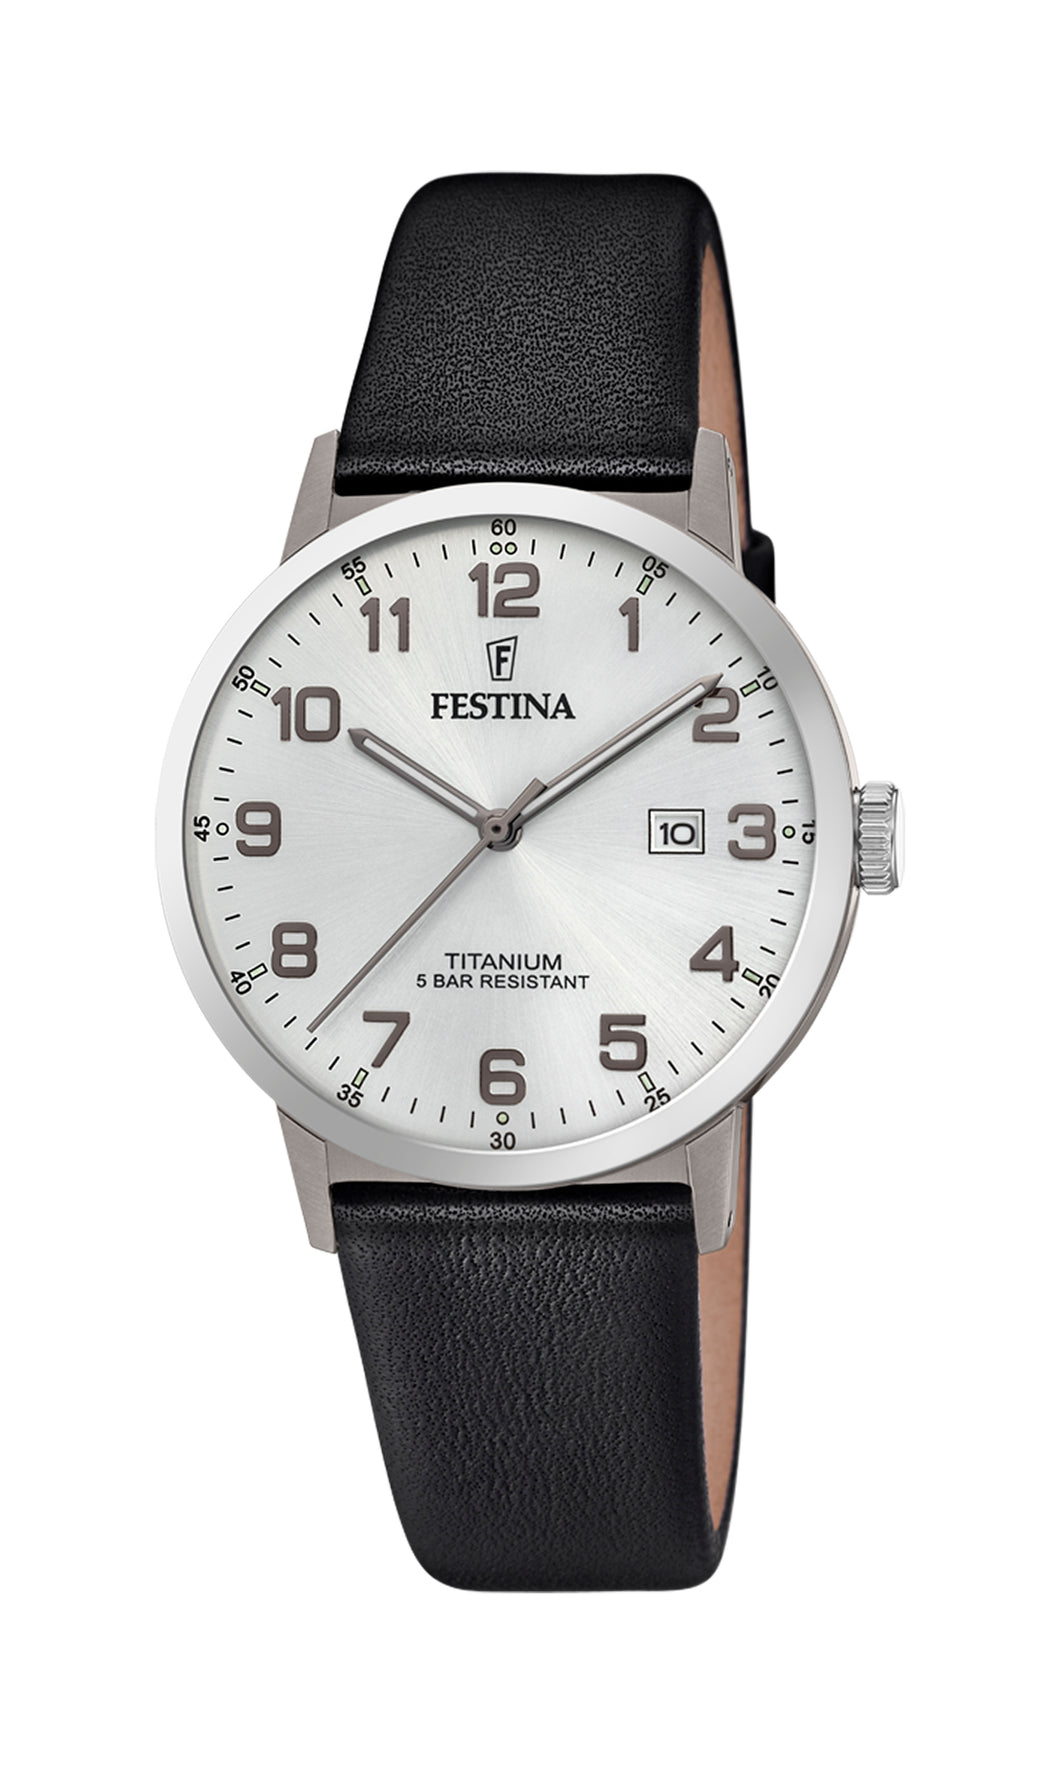 Reloj Festina Titanium F20471/1